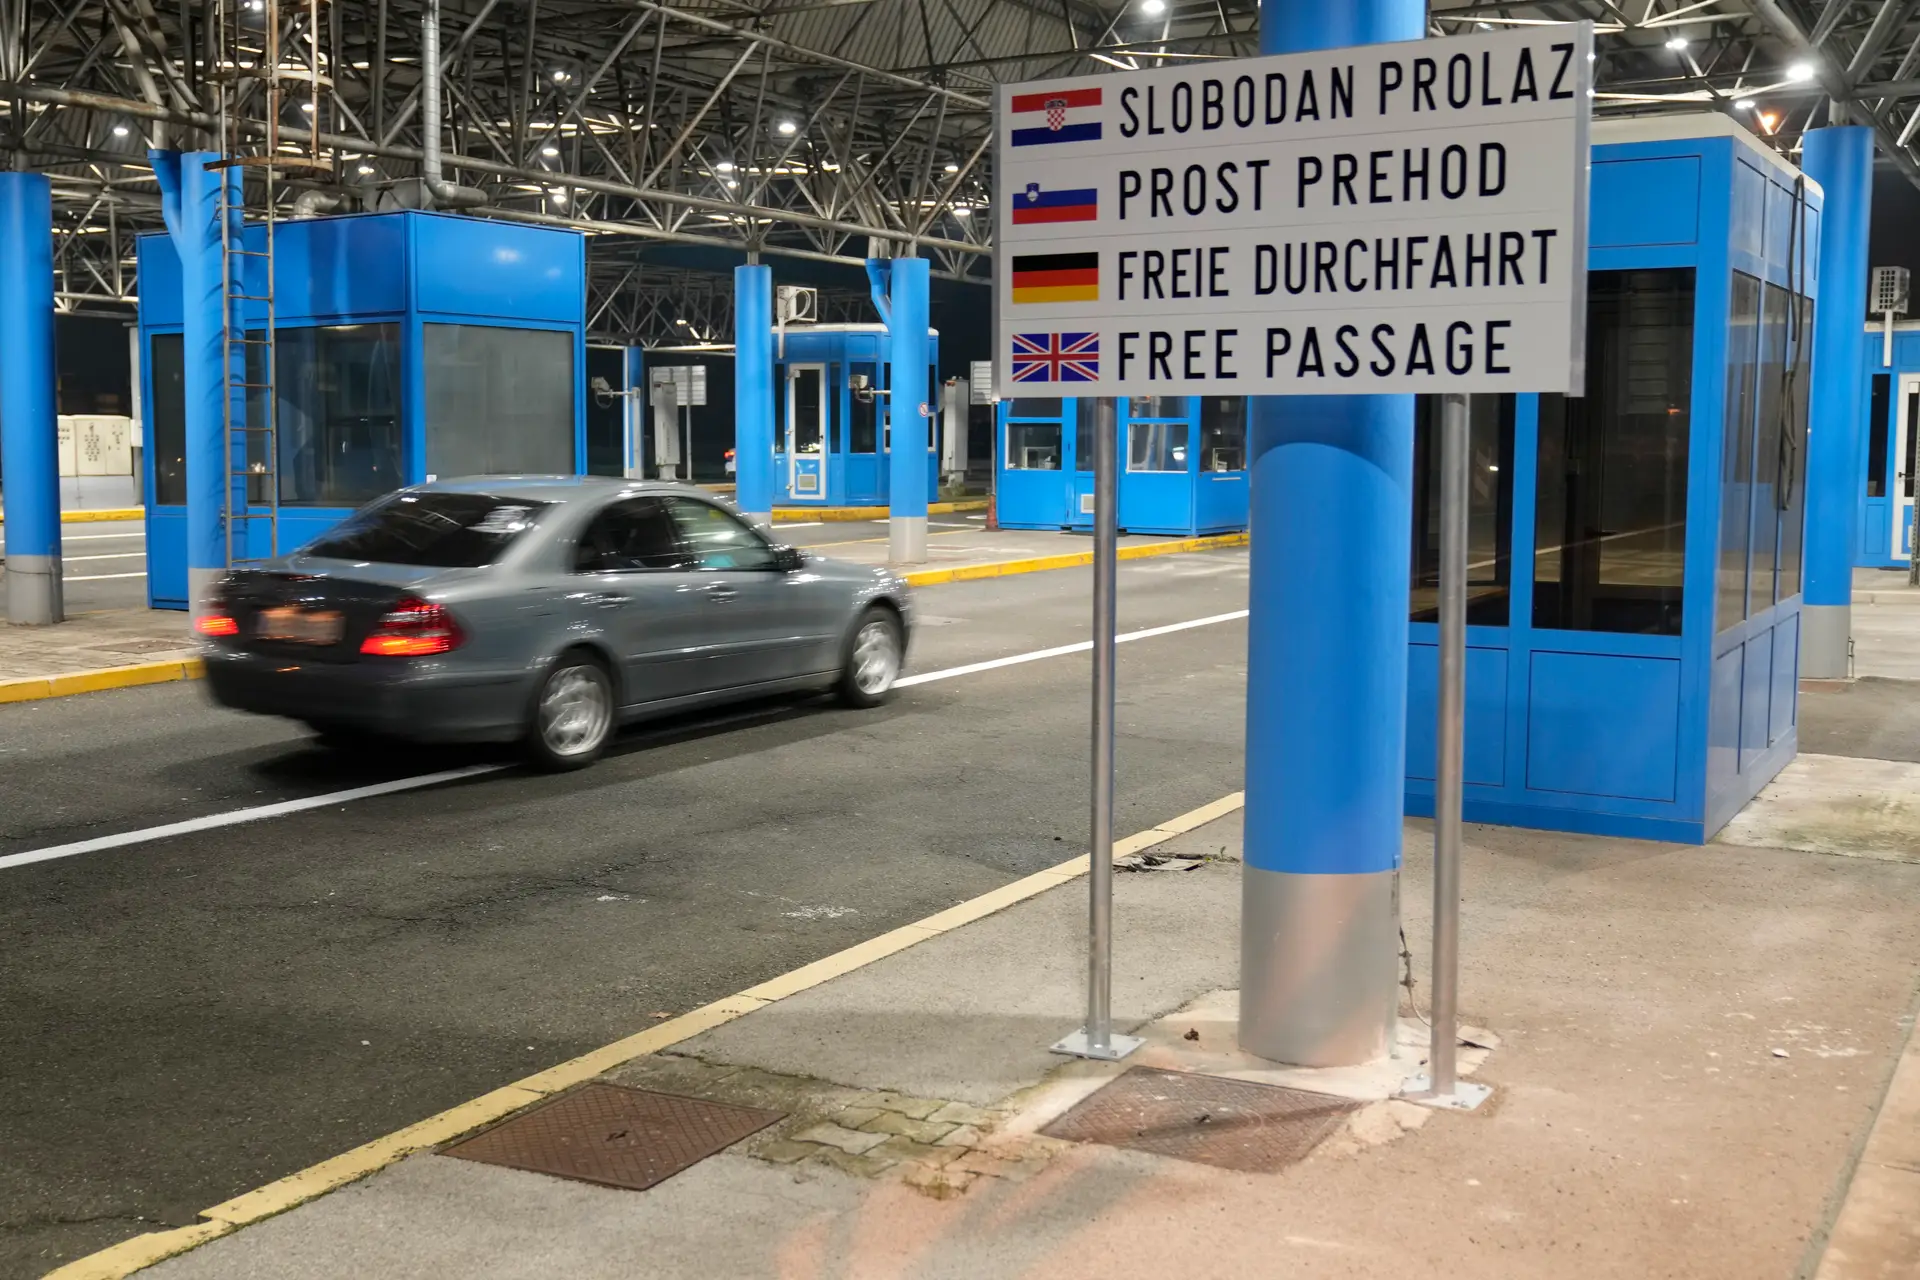 Croácia entra hoje no euro e no espaço Schengen